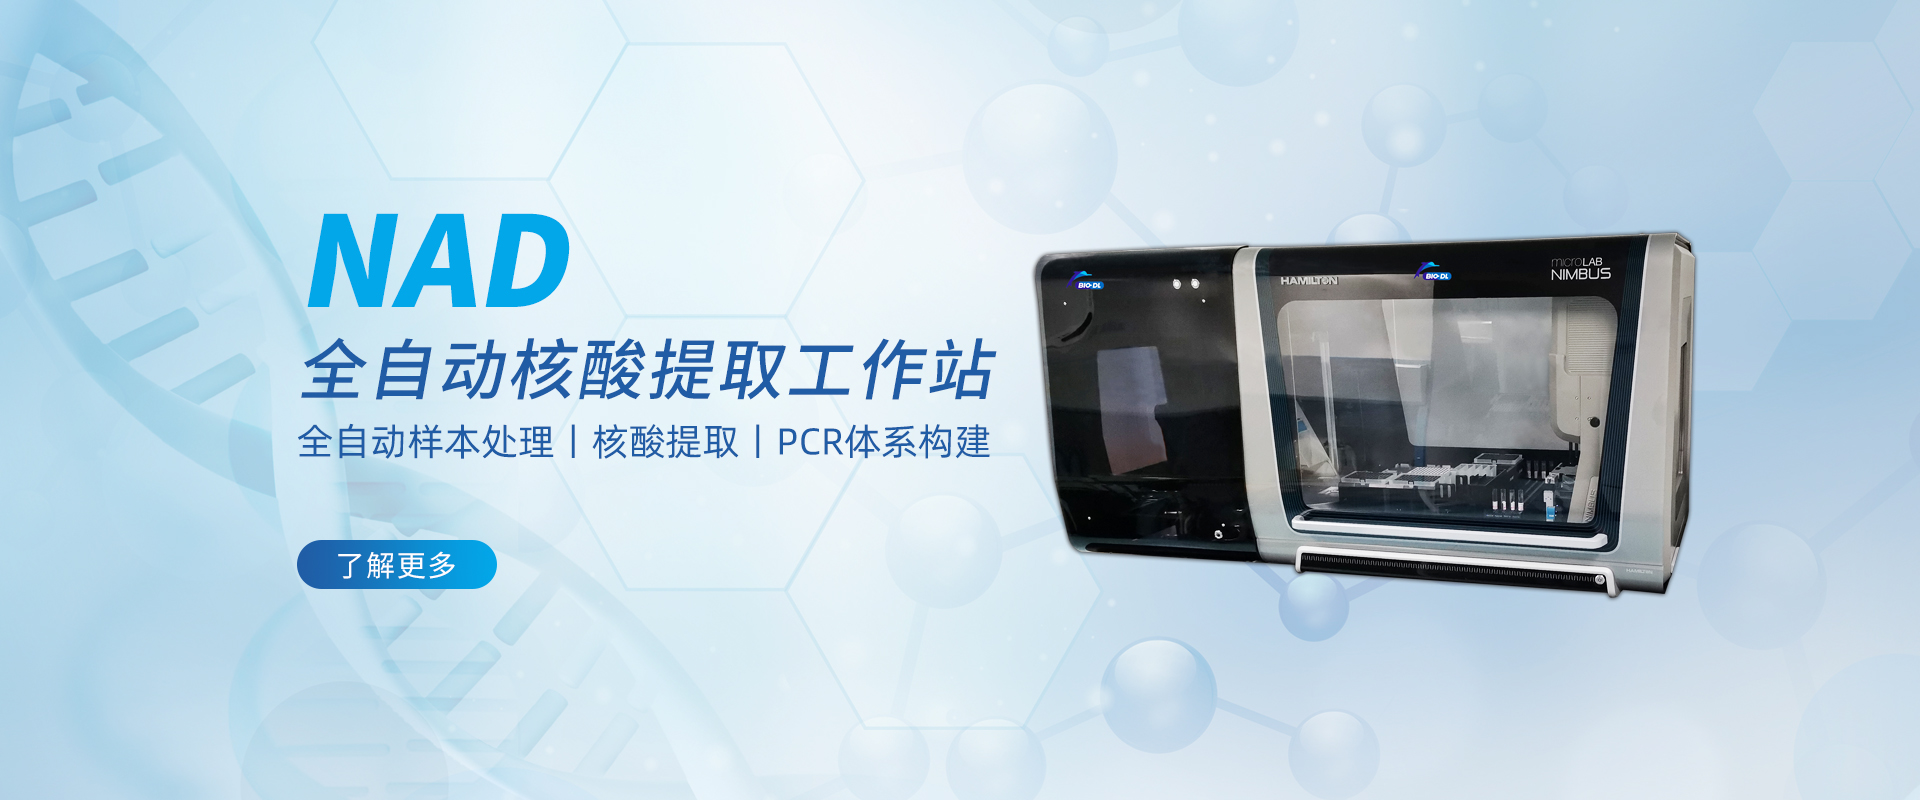 上海宝予德科学仪器有限公司官方网站